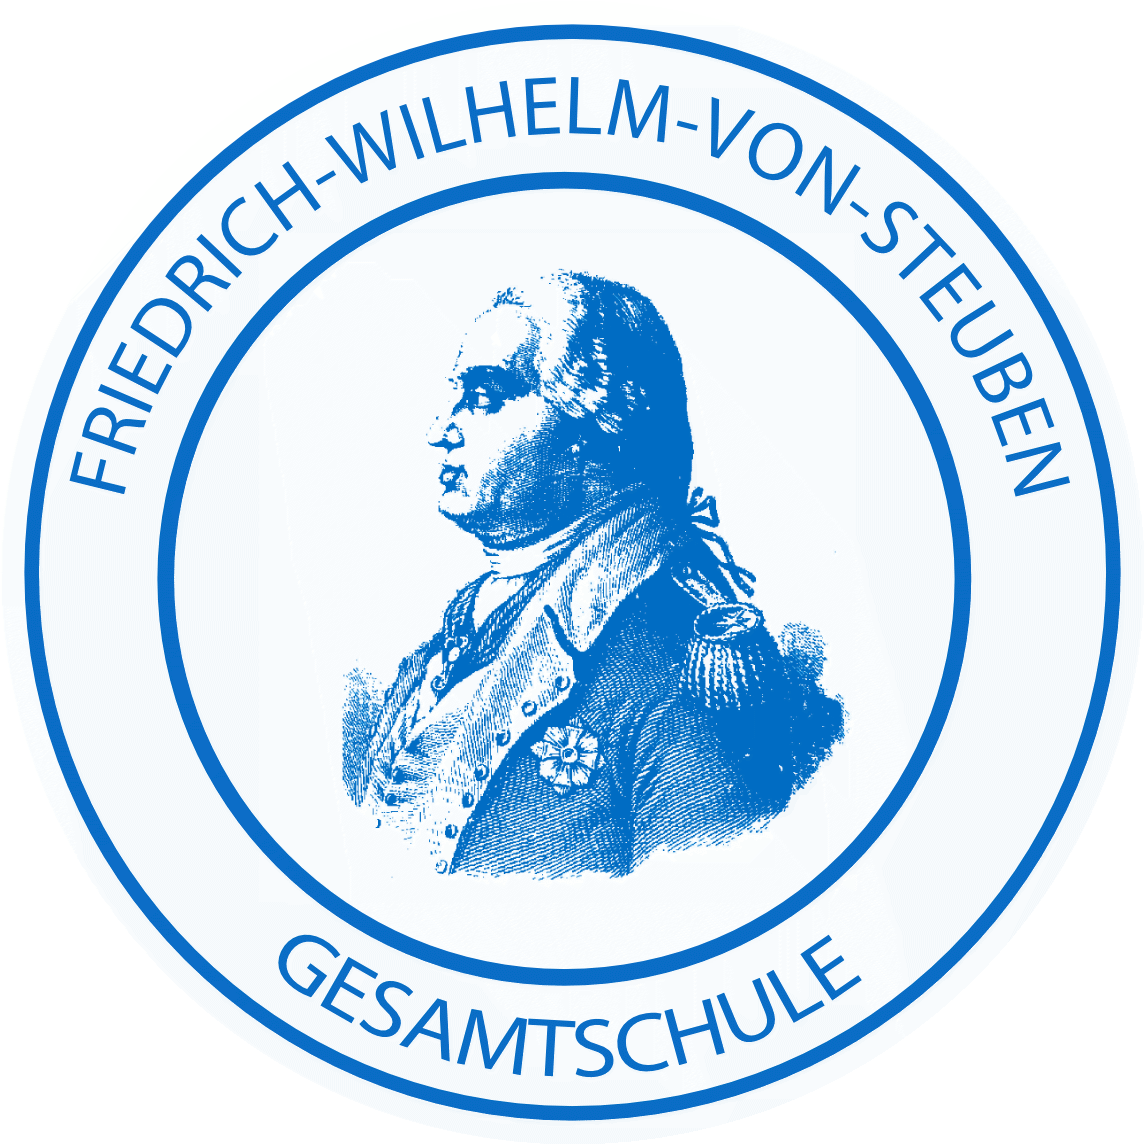 Friedrich-Wilhelm-von-Steuben-Gesamtschule Potsdam